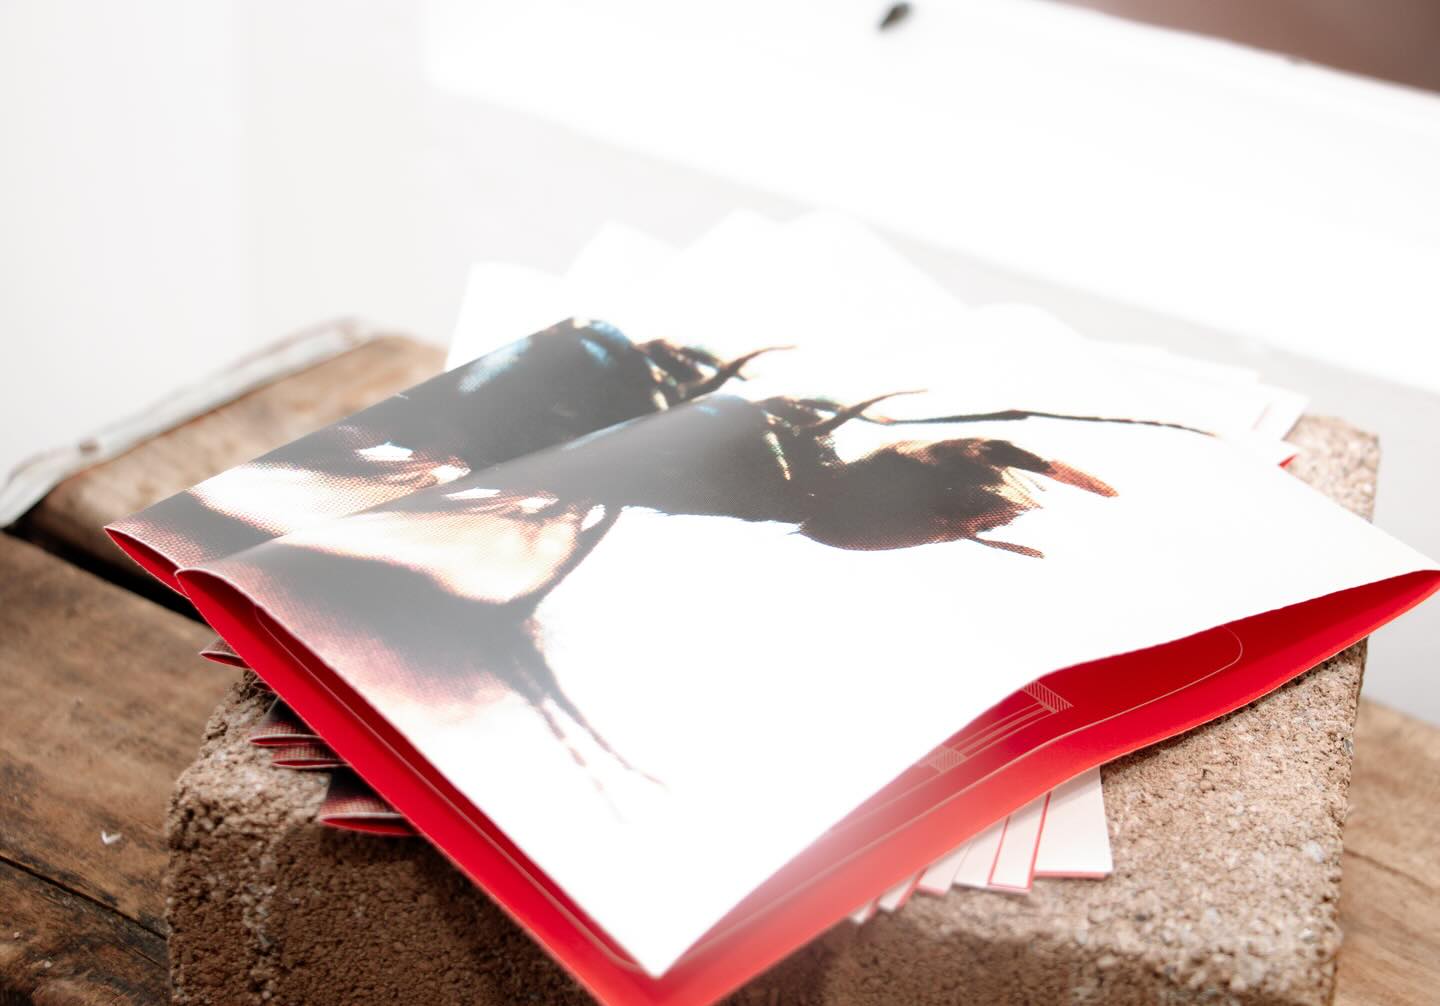 Un libro de fotografía abierto en una página iluminada por el sol, mostrando imágenes vibrantes, simbolizando la mezcla del arte con elementos naturales.